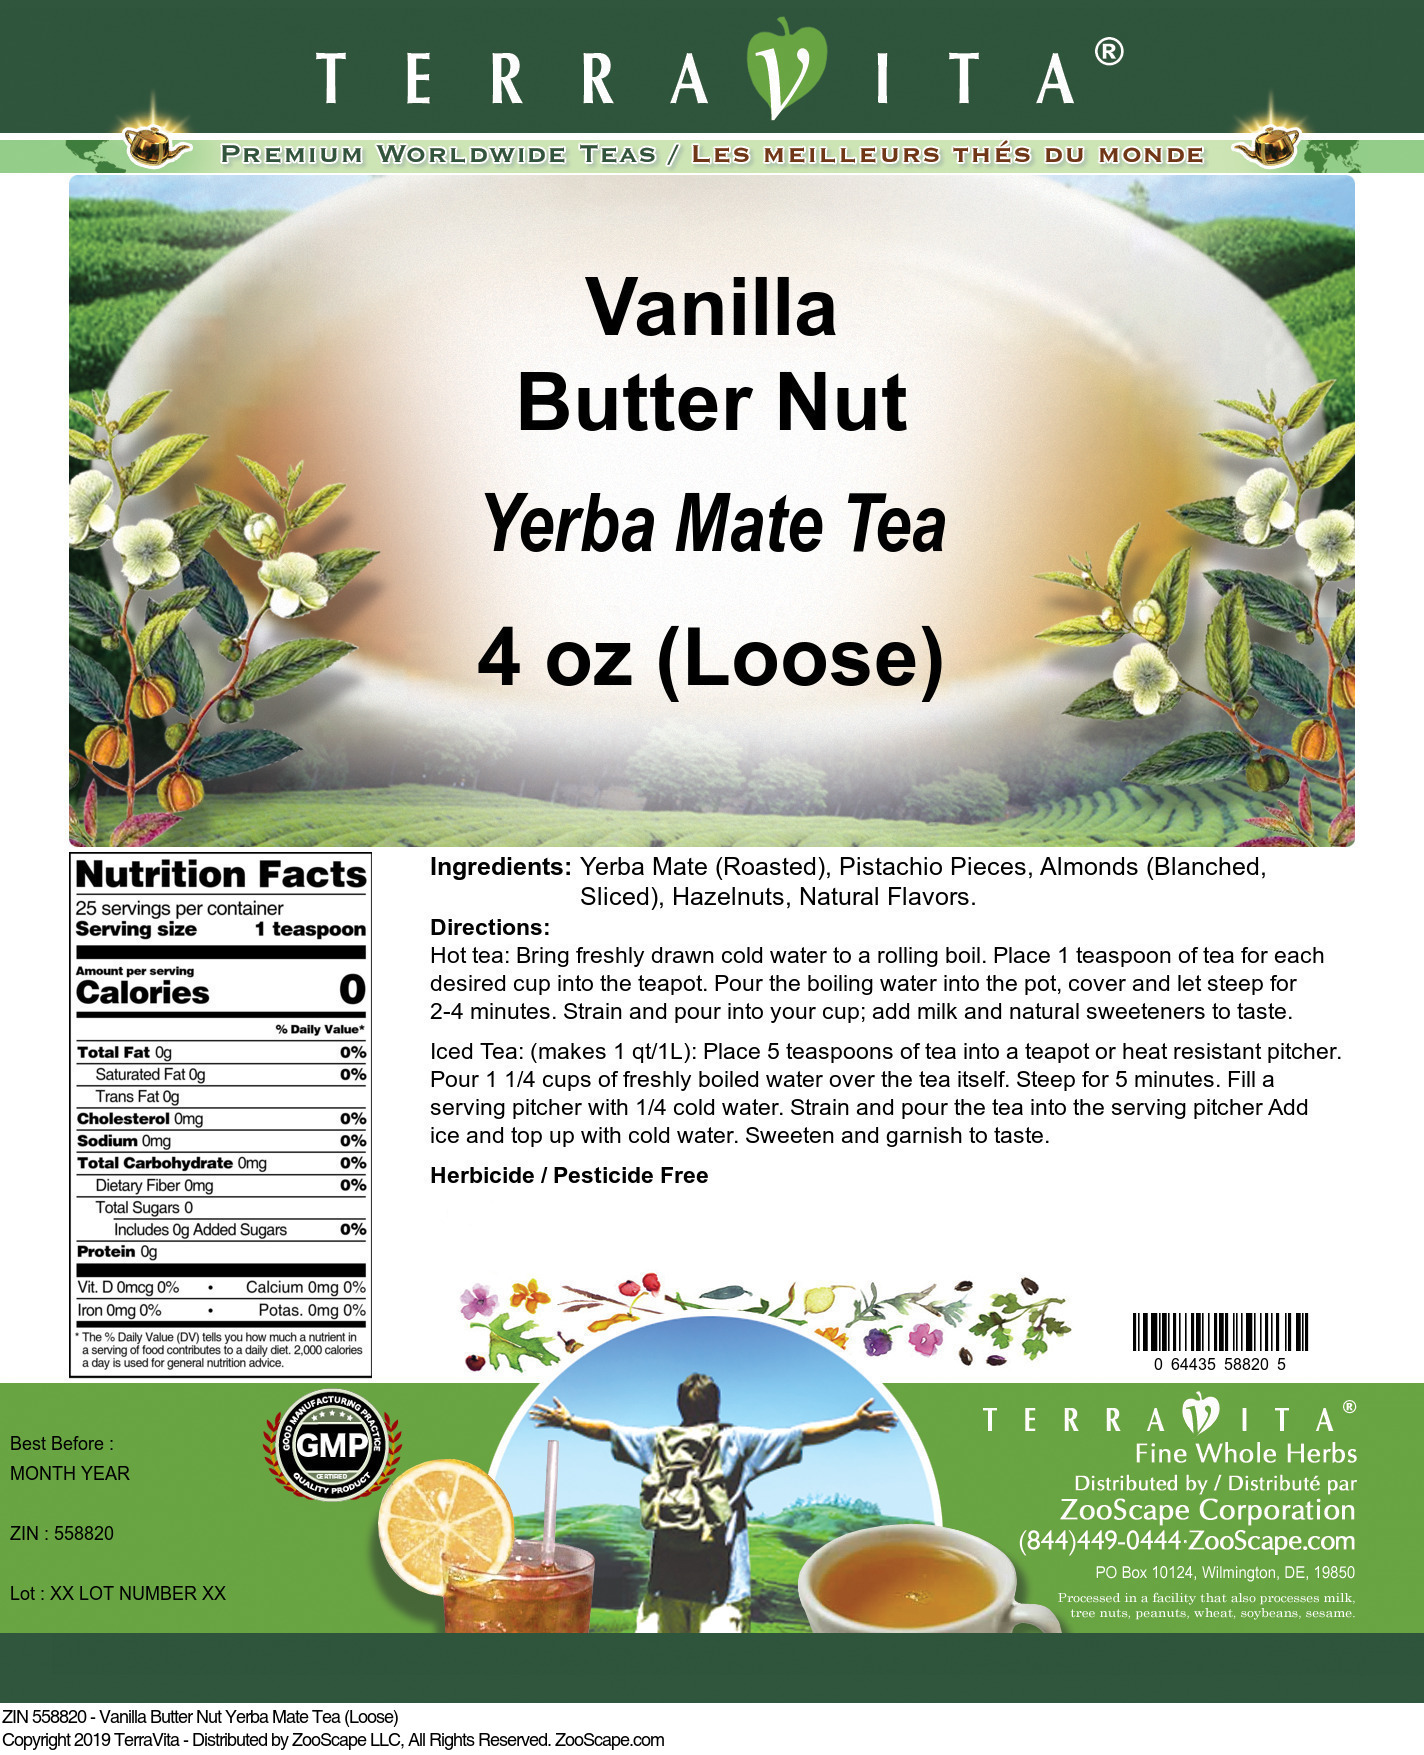 Vanilla Butter Nut Yerba Mate Tea (Loose) - Label